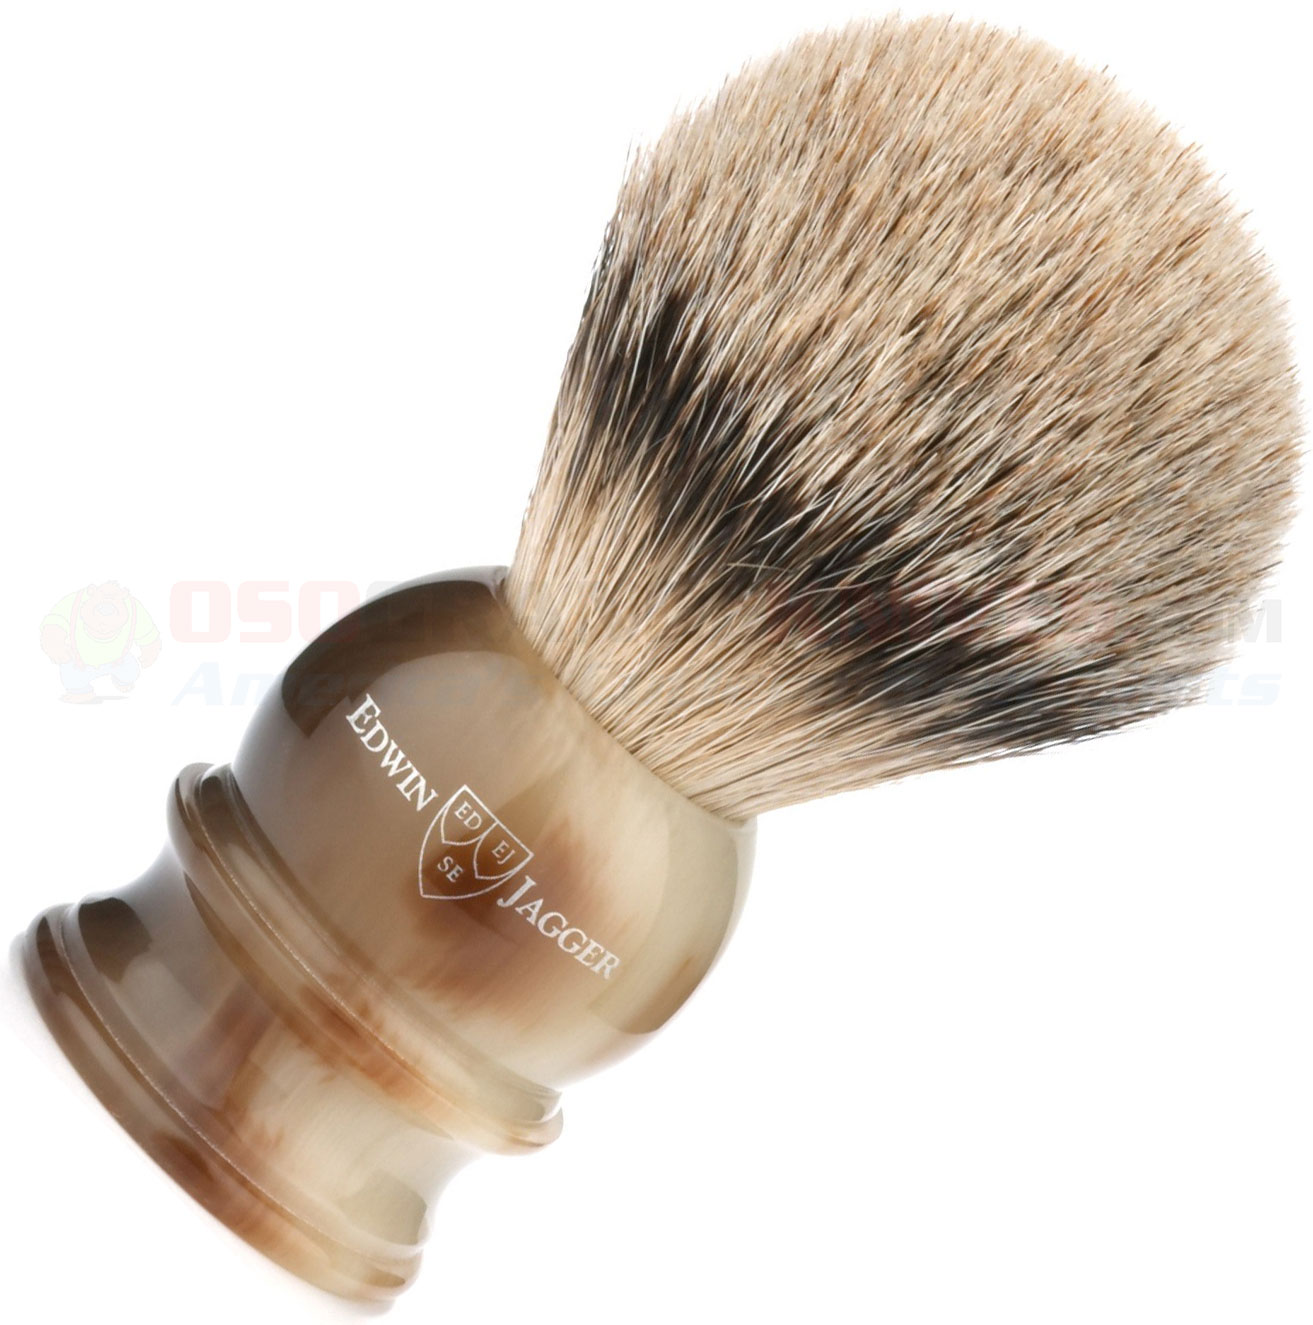 edwin jagger silvertip badger shaving brush review